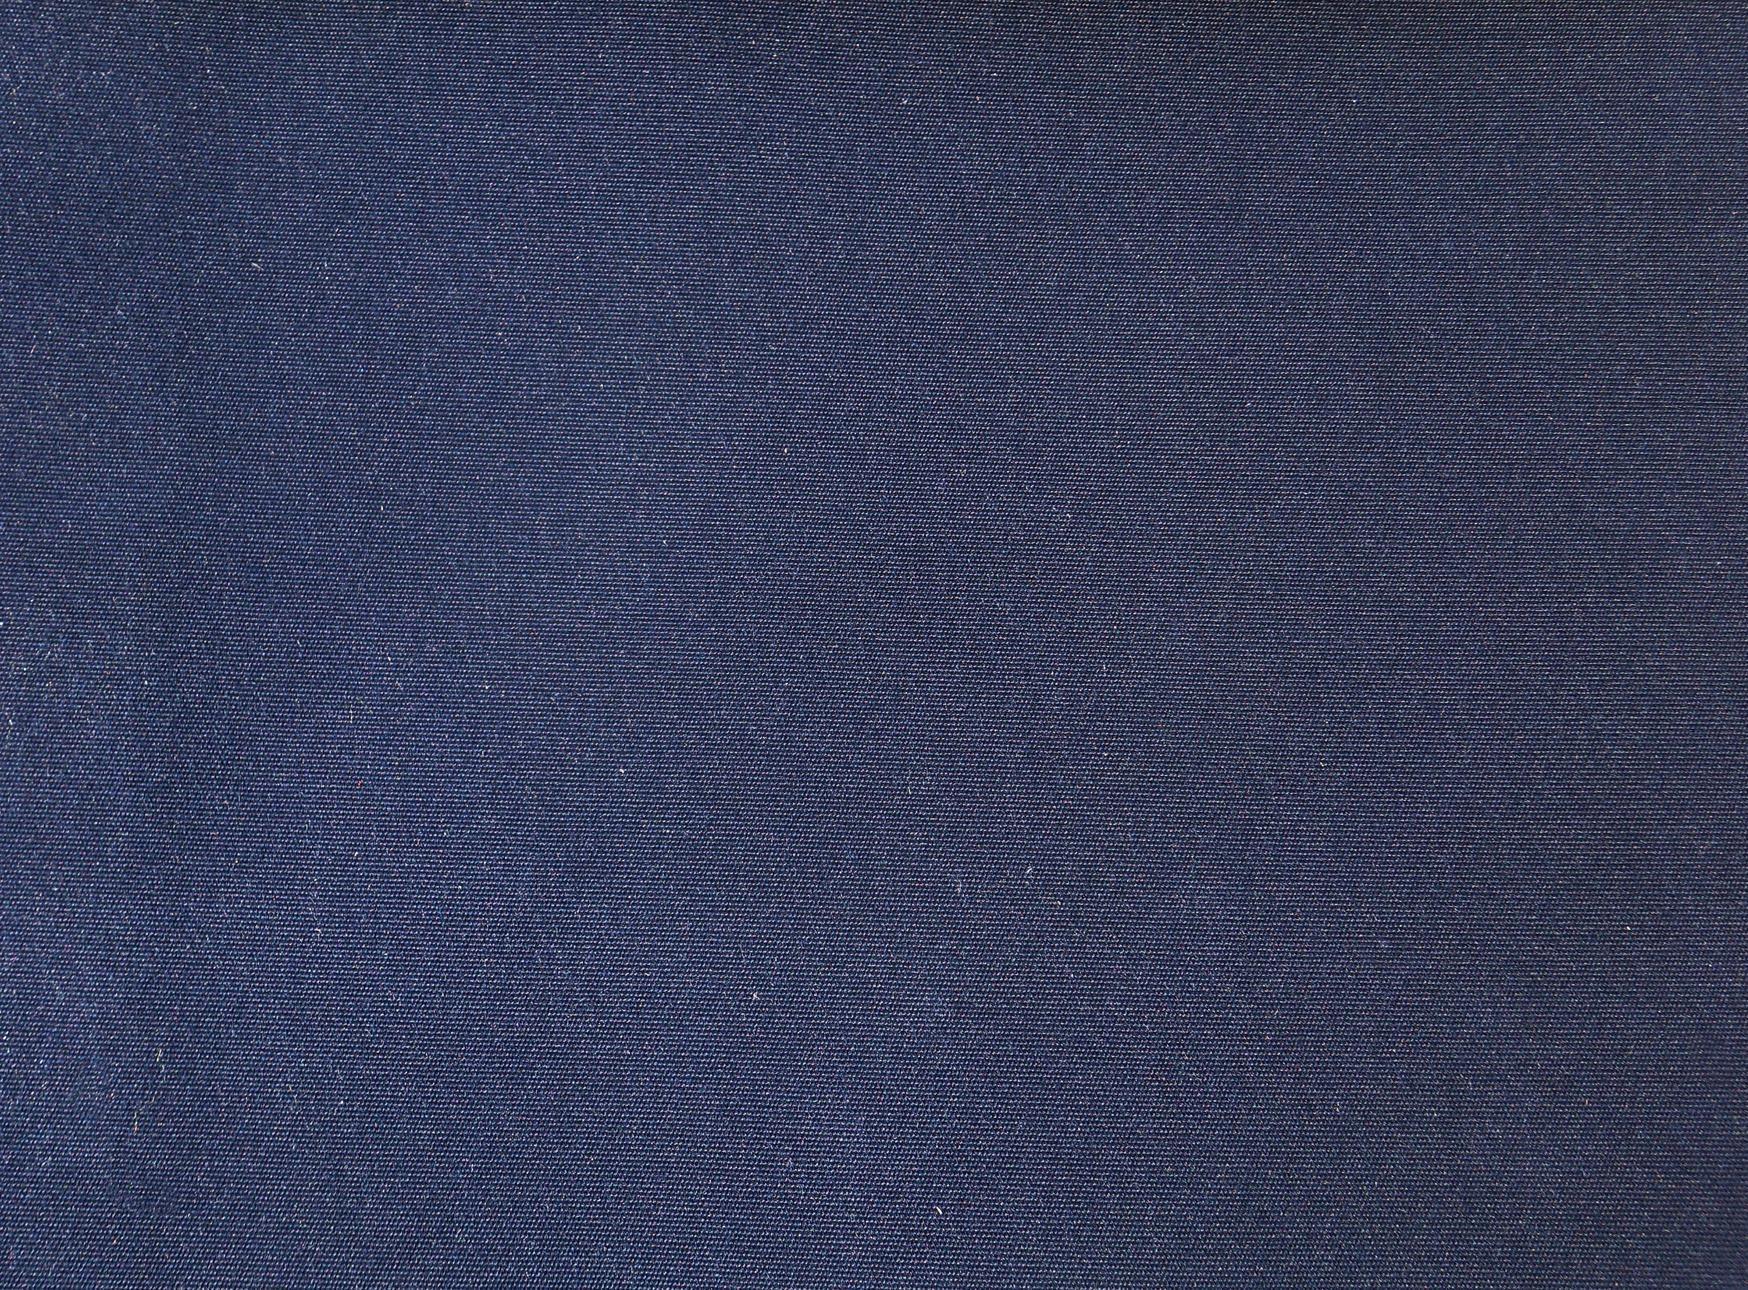 Wallpaper For > Plain Navy Blue Wallpaper